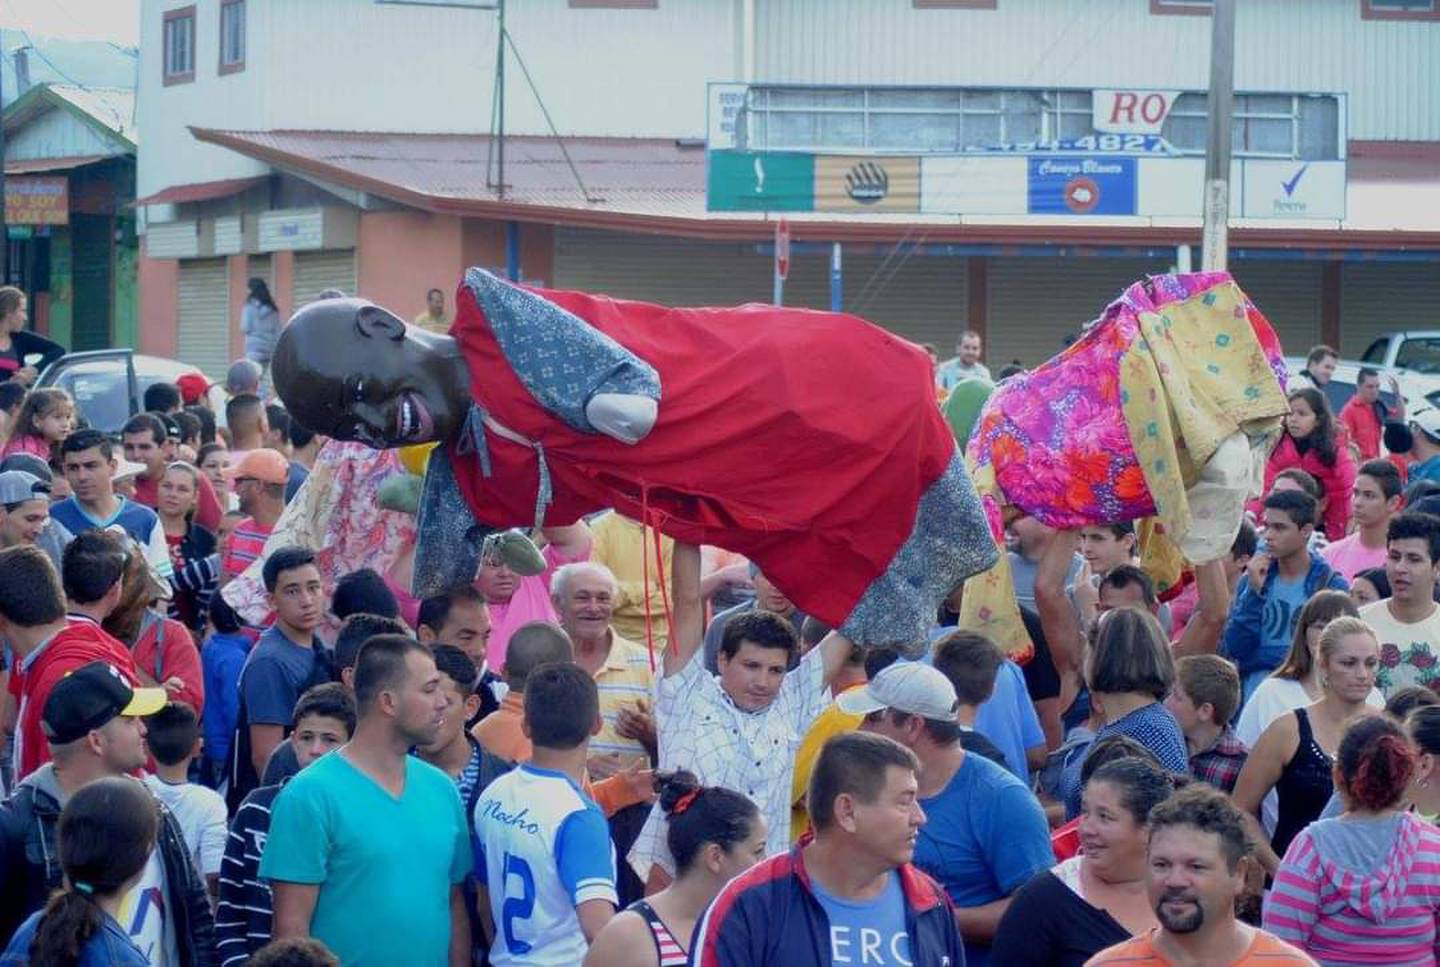 Mascaradas en San Roque de Grecia, una tradición que no falta en las fiestas patronales de esta comunidad.